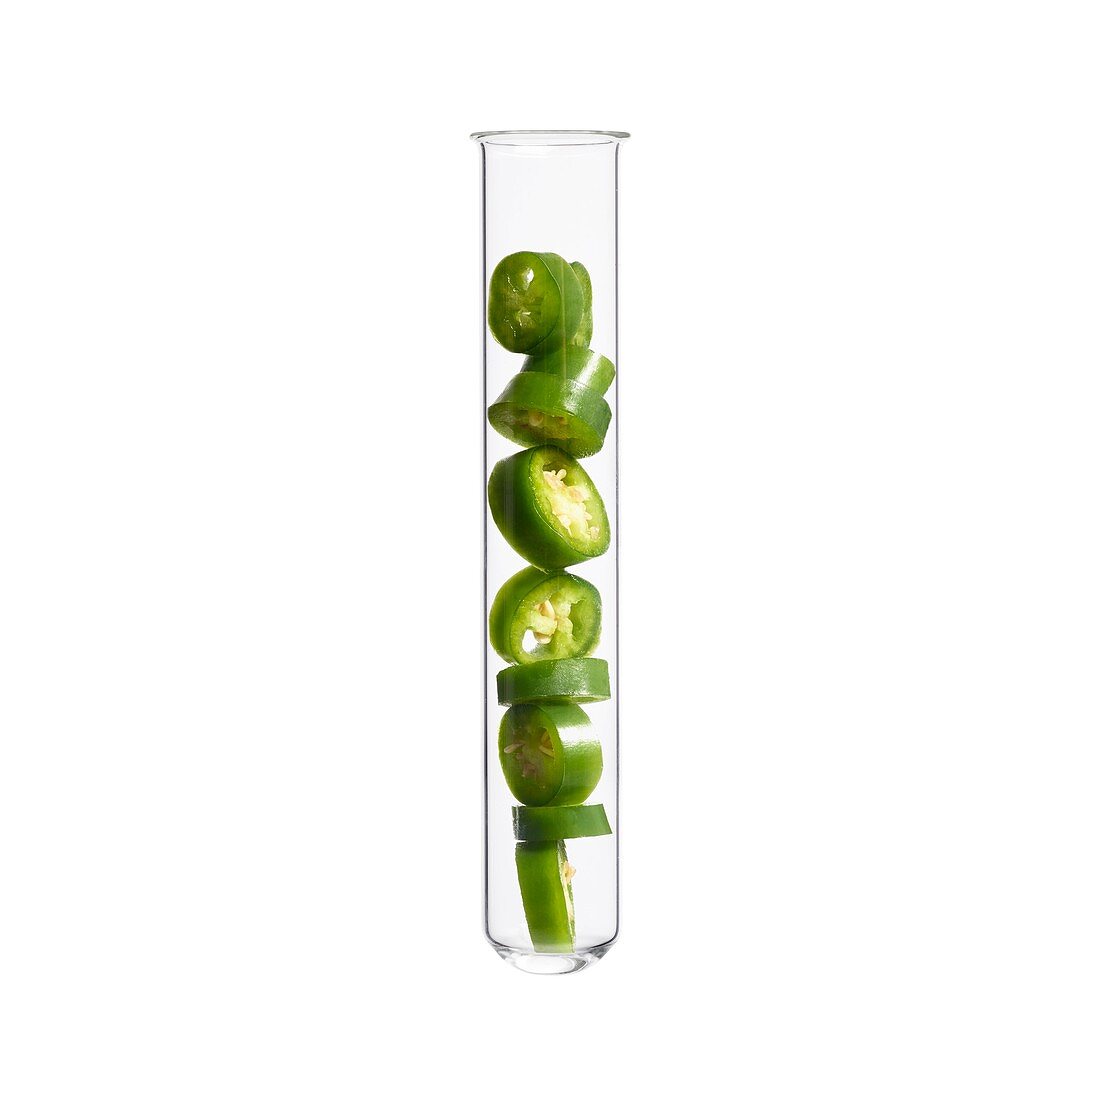 Green chilli pepper in test tube